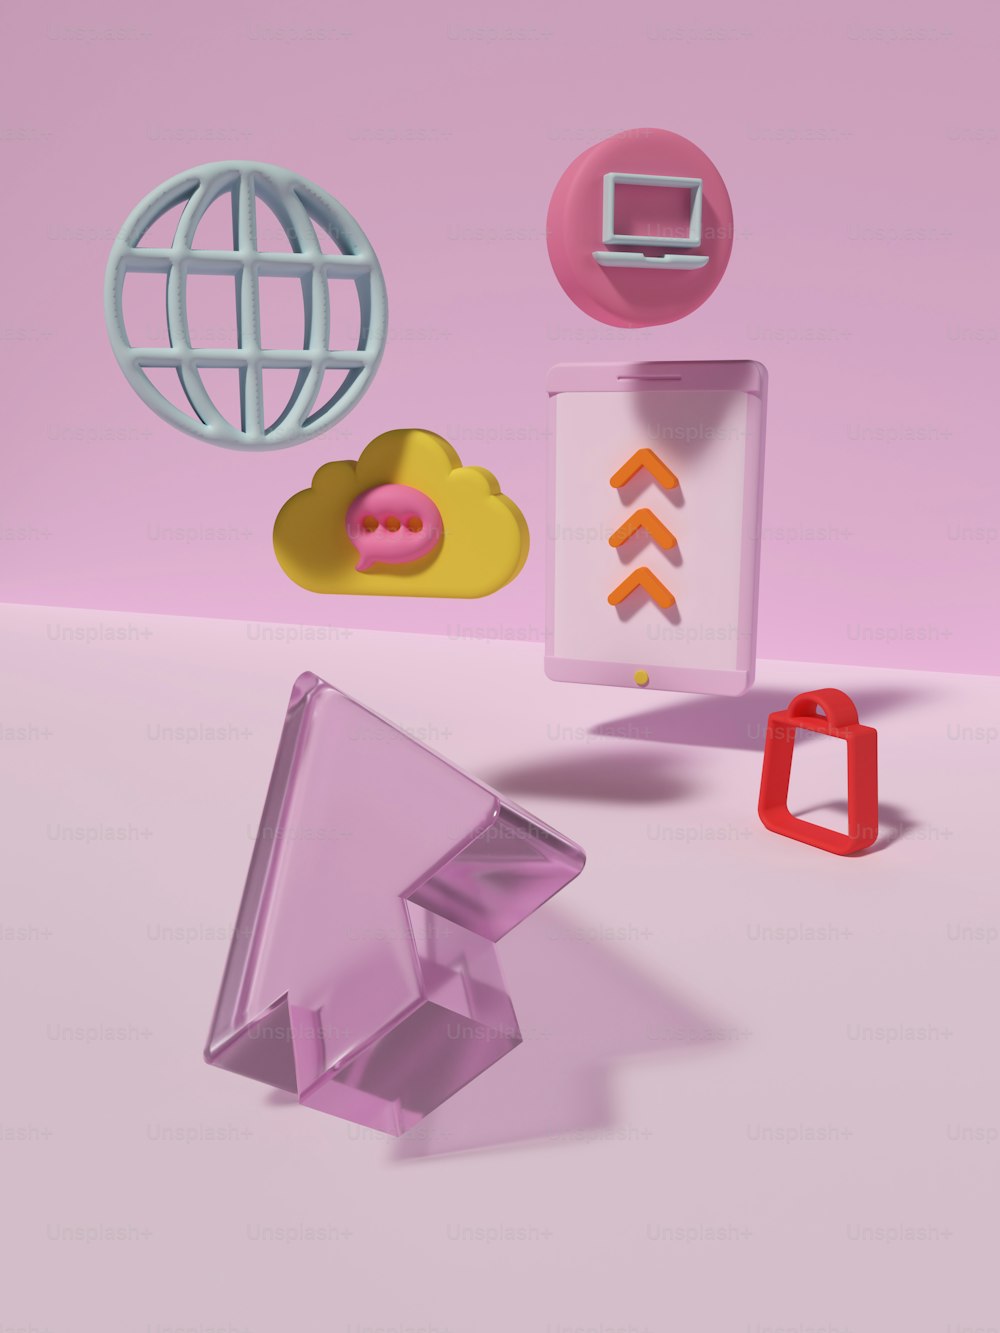 Eine Gruppe von Objekten, die sich auf einer rosafarbenen Oberfläche befinden